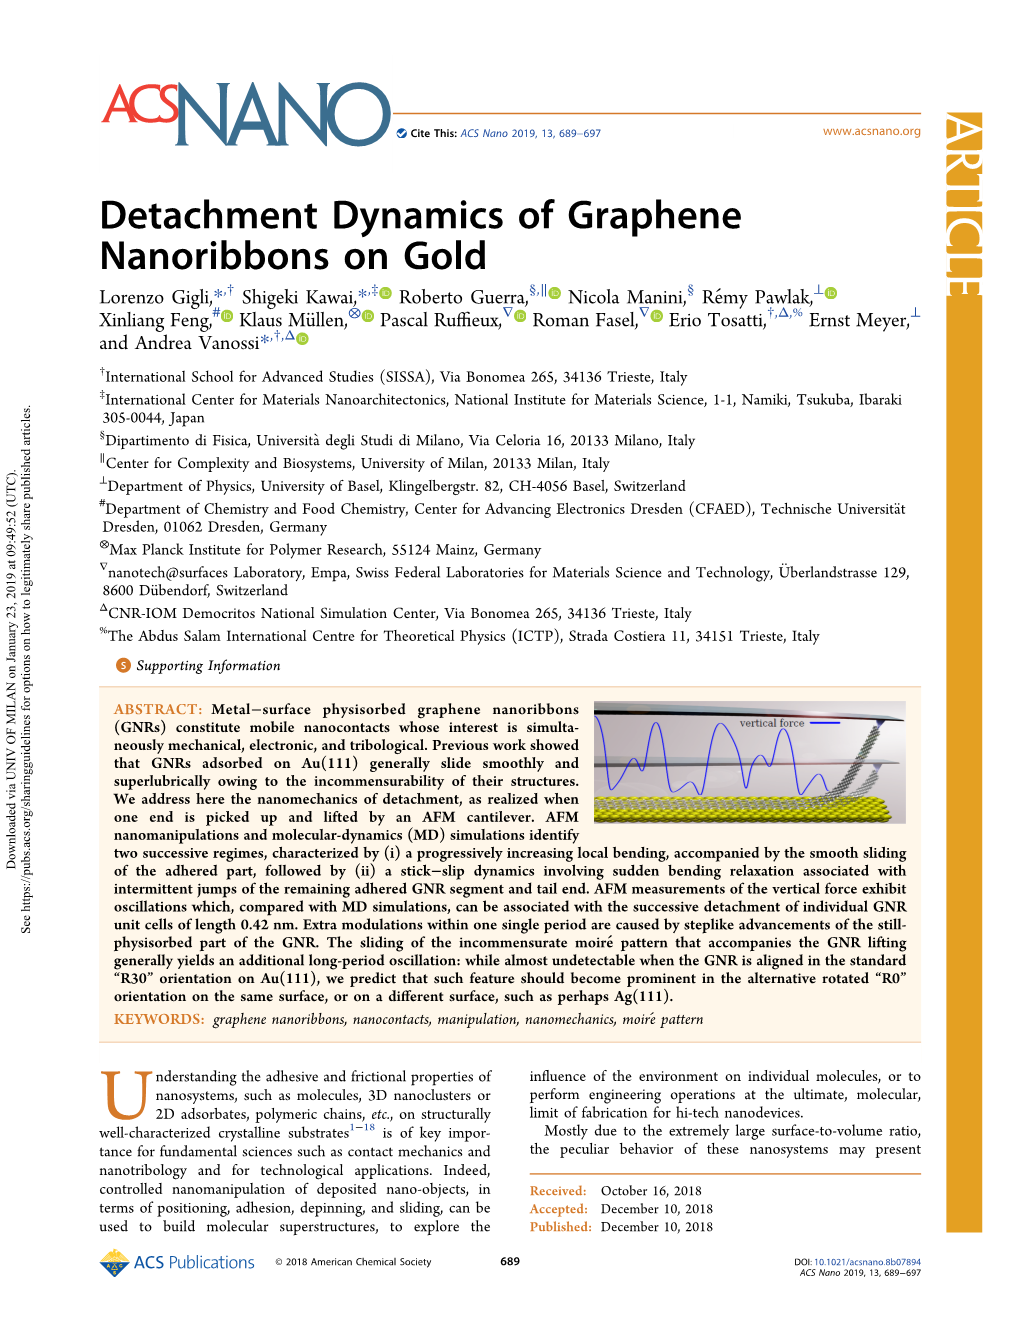 Detachment Dynamics of Graphene Nanoribbons on Gold